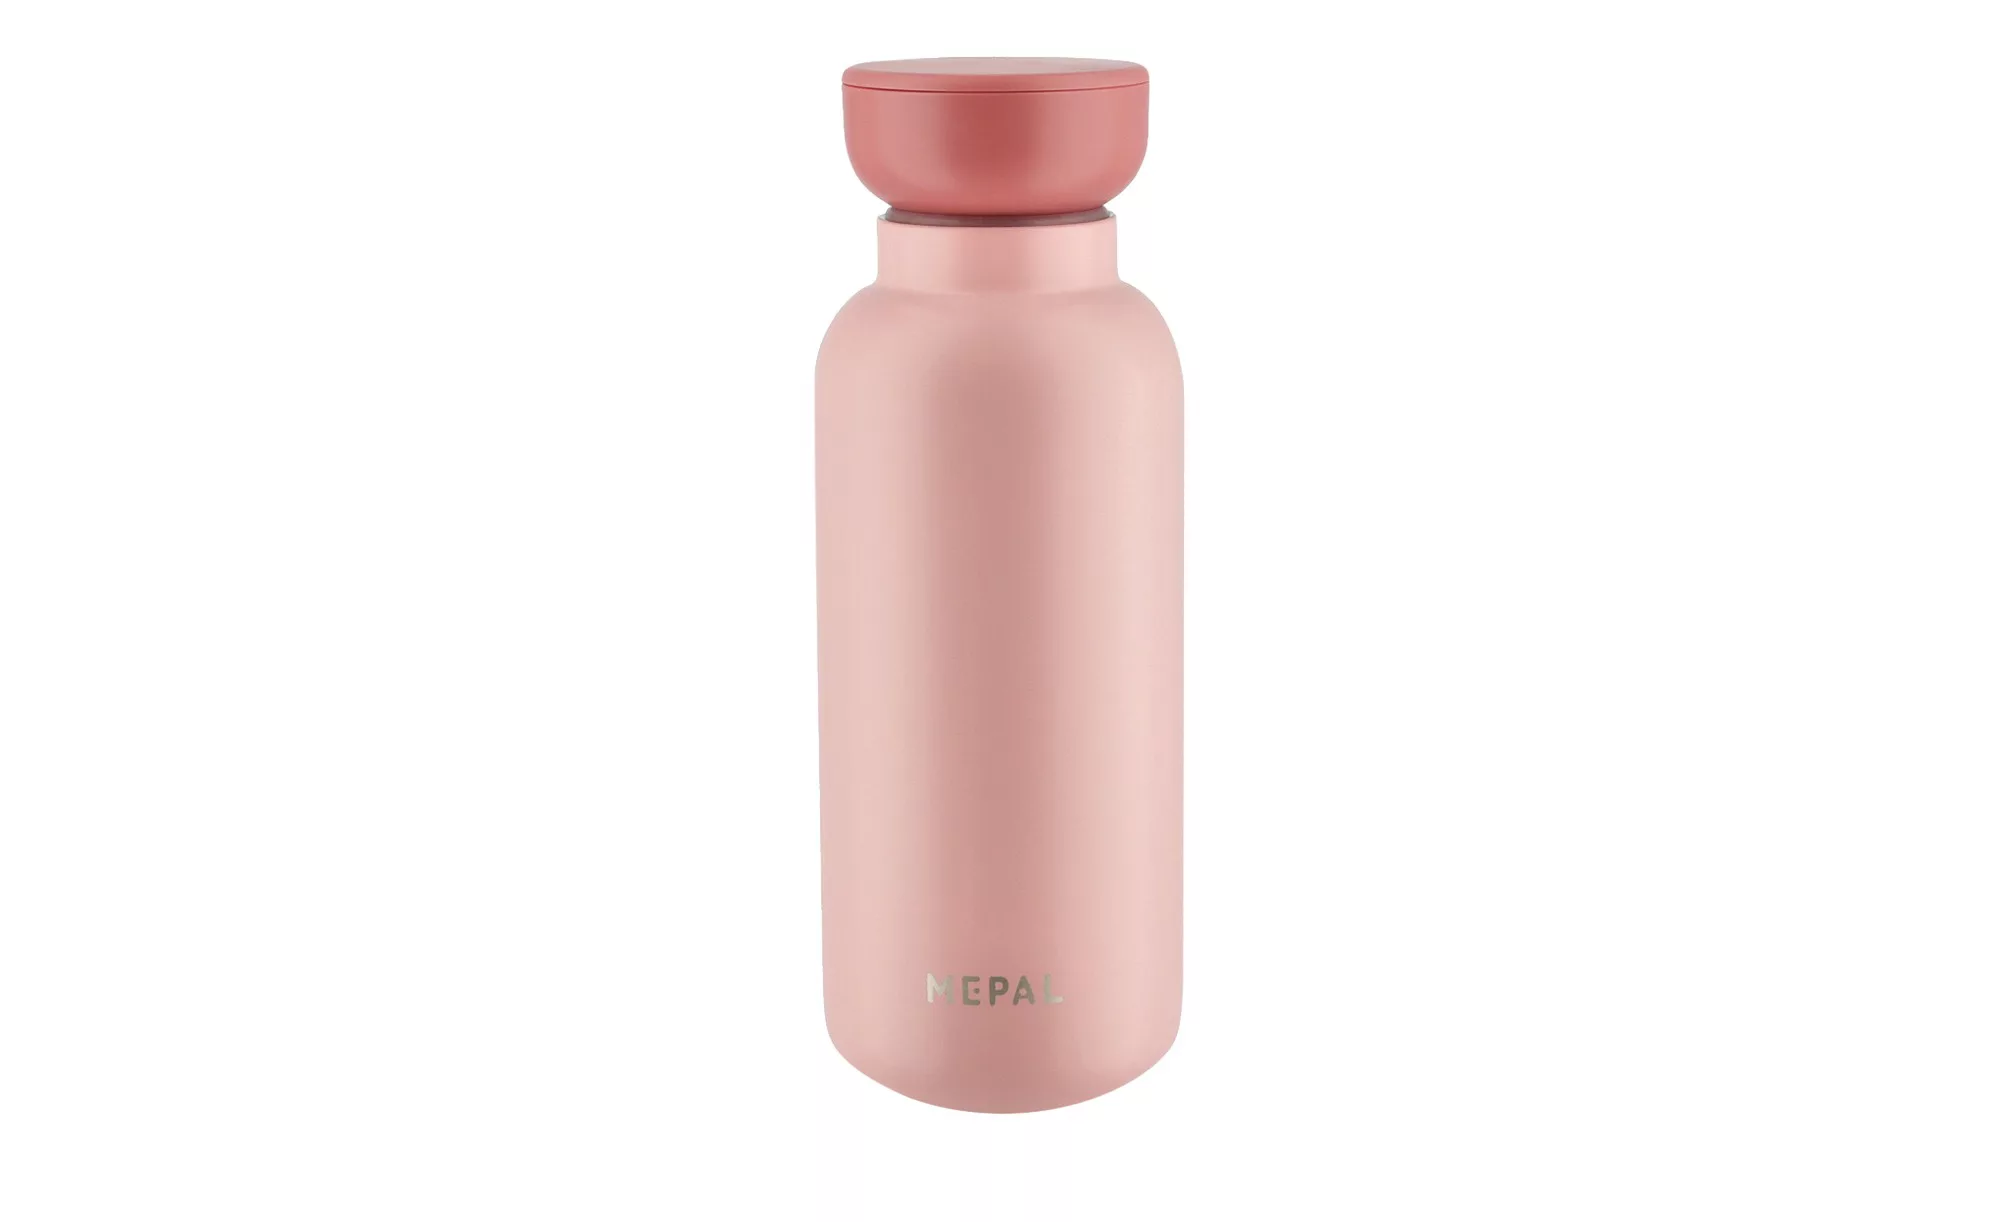 Mepal Thermoflasche 350 ml  Ellipse - Edelstahl, Kunststoff - 19,4 cm - Kaf günstig online kaufen